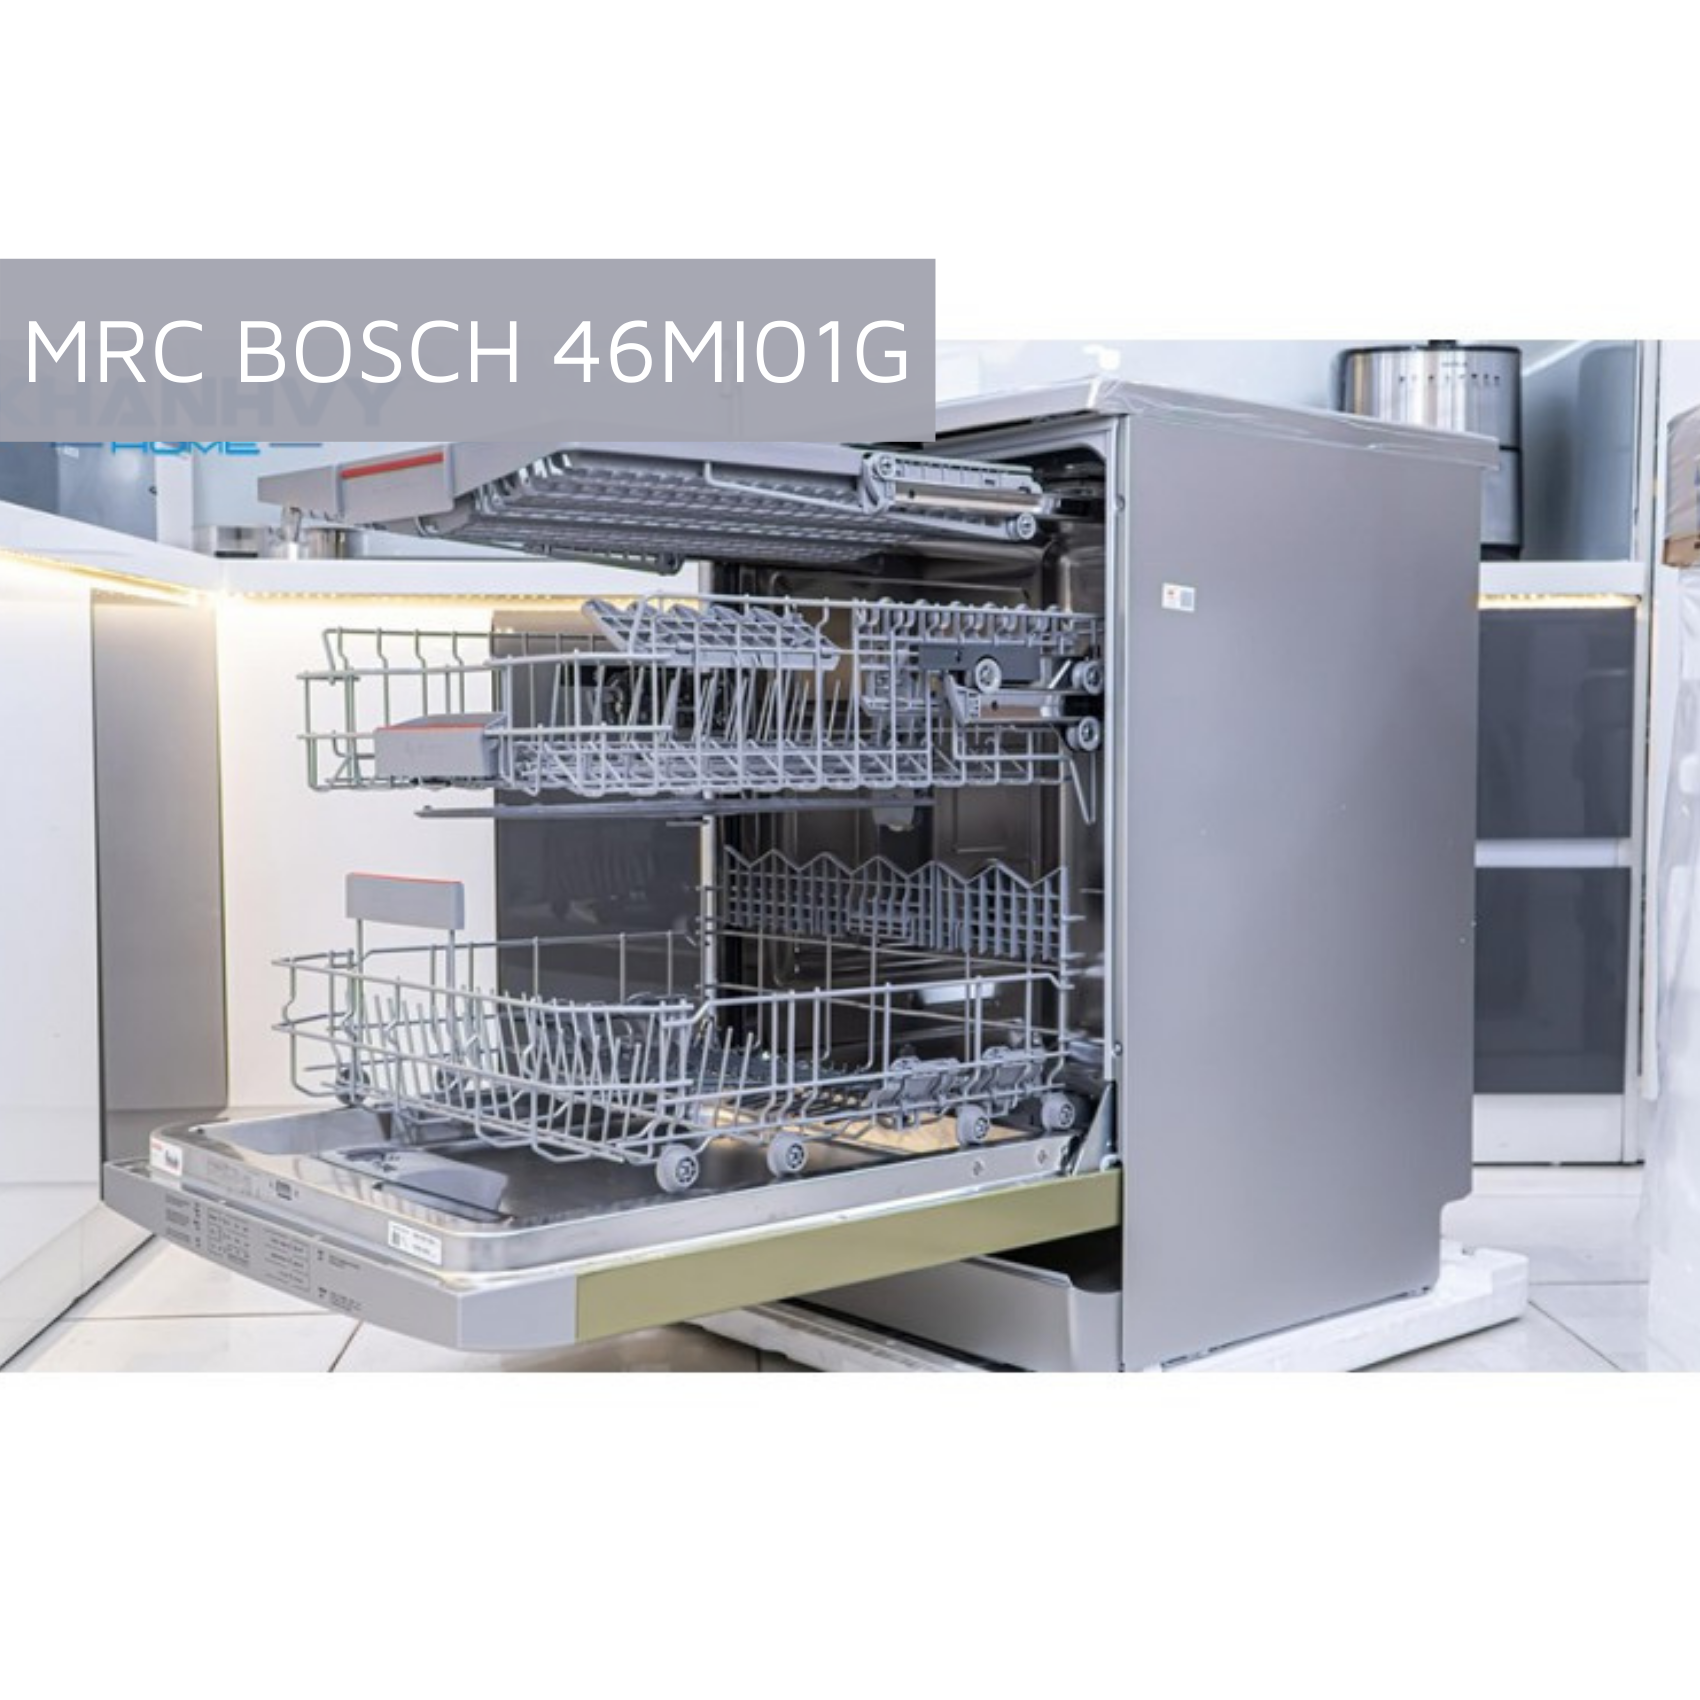 Máy rửa chén độc lập Bosch SMS46MI01G 14 bộ - Series  - Sản xuất tại Đức - Hàng chính hãng